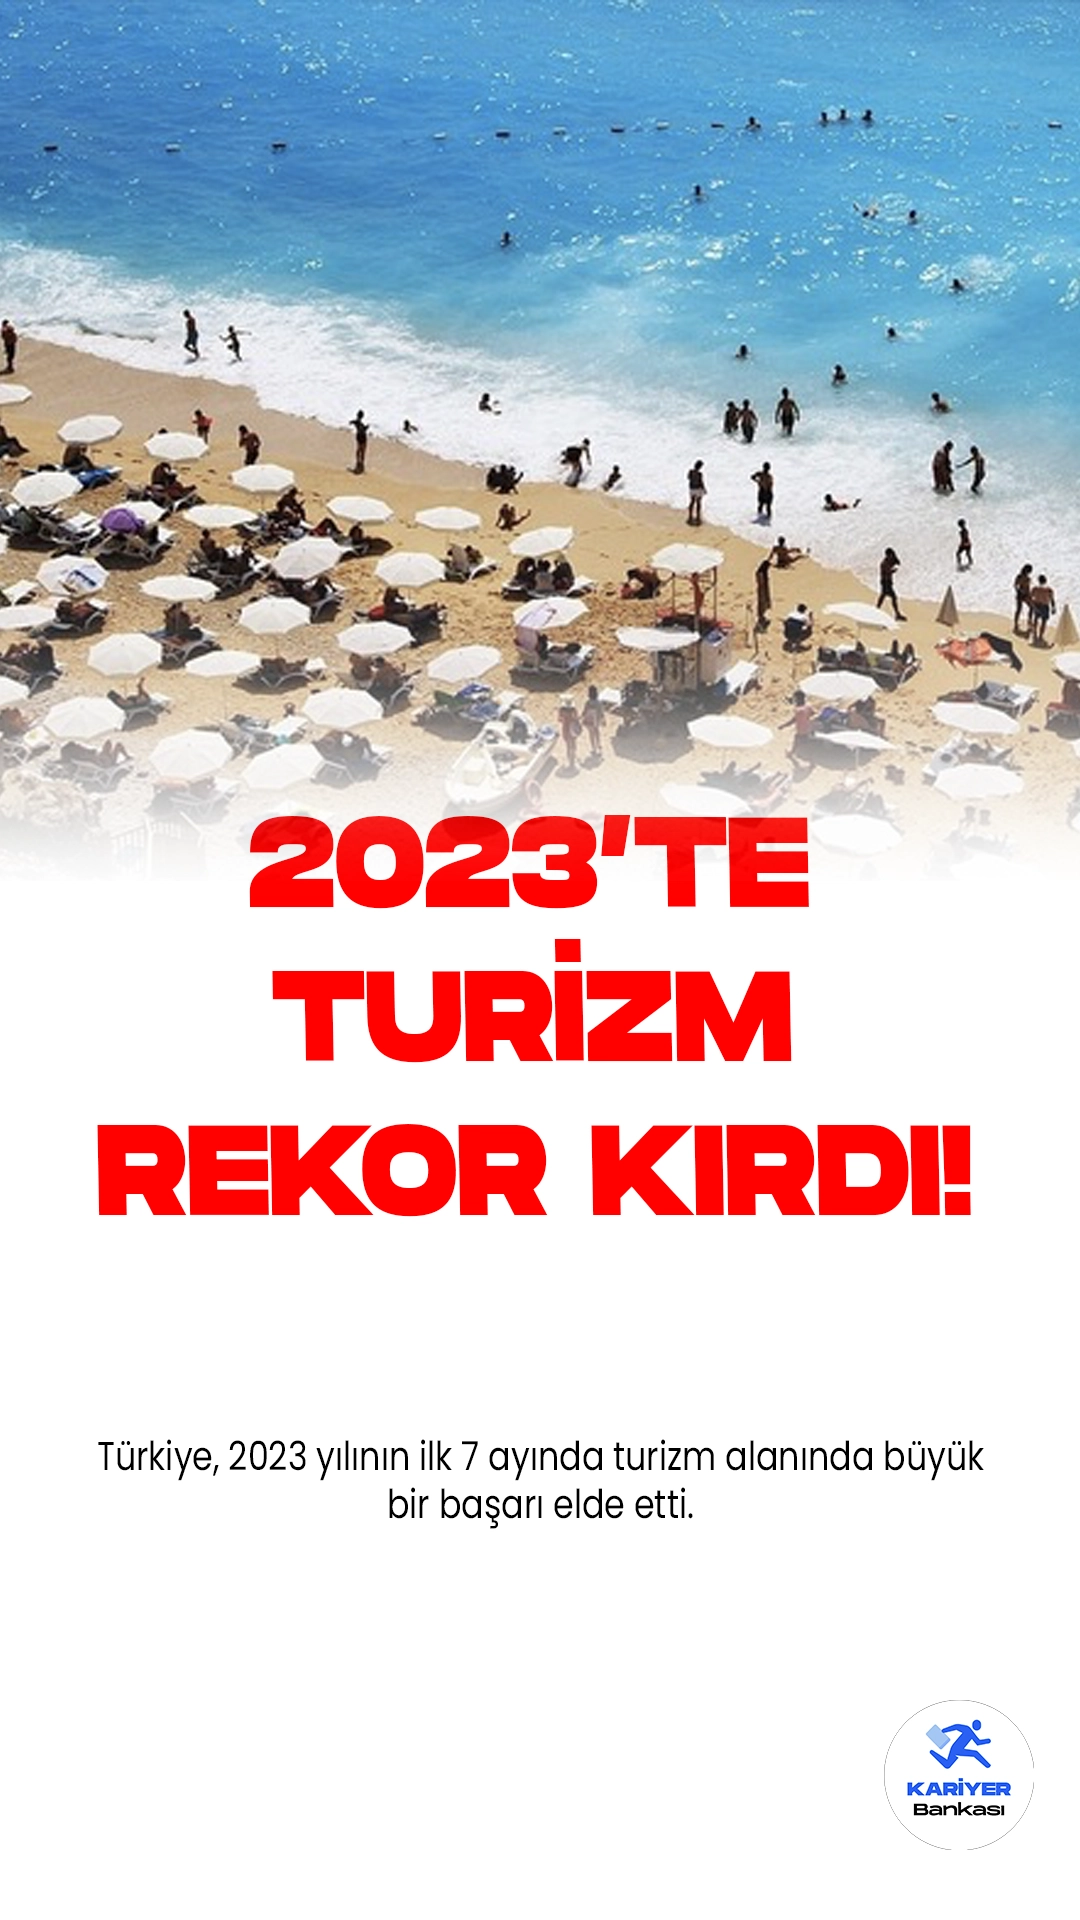 Türkiye Turizmi 2023 Yılında Rekor Kırdı.Türkiye, 2023 yılının ilk 7 ayında turizm alanında büyük bir başarı elde etti. Toplamda 30 milyon 93 bin 446 ziyaretçiyi ağırlayarak, 2019 yılında kaydedilen 26 milyon 524 bin rakamını geride bıraktı.